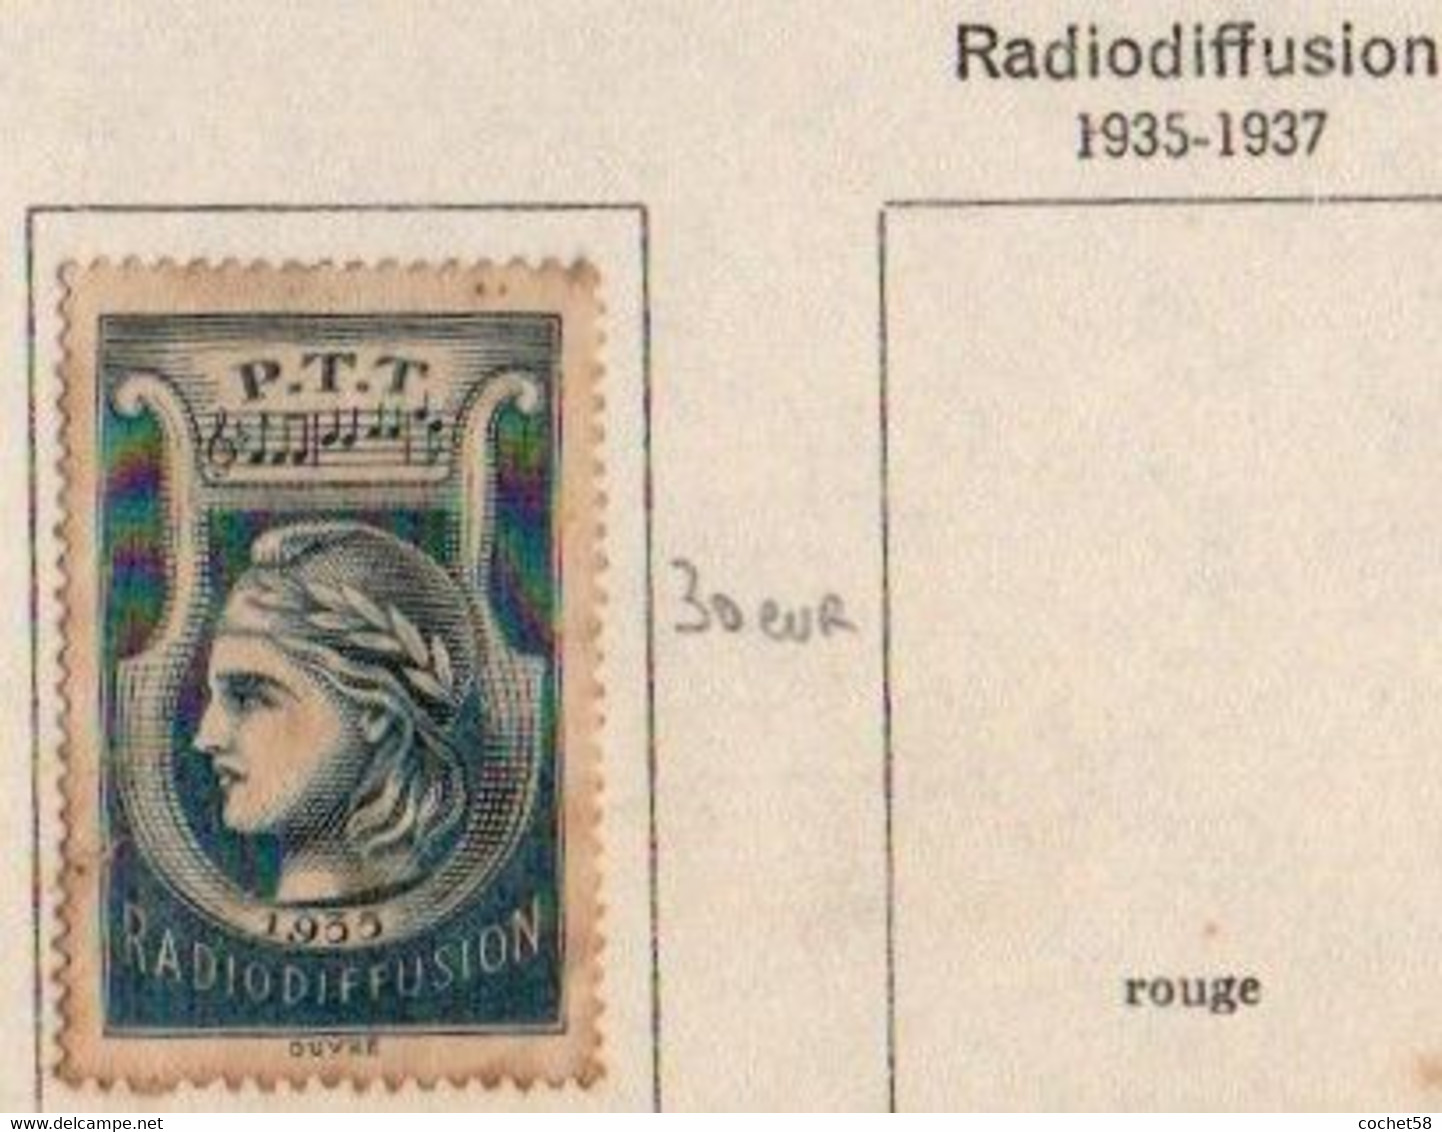 FRANCE Radiodiffusion 1935-1937 Bleu - Radiodiffusion